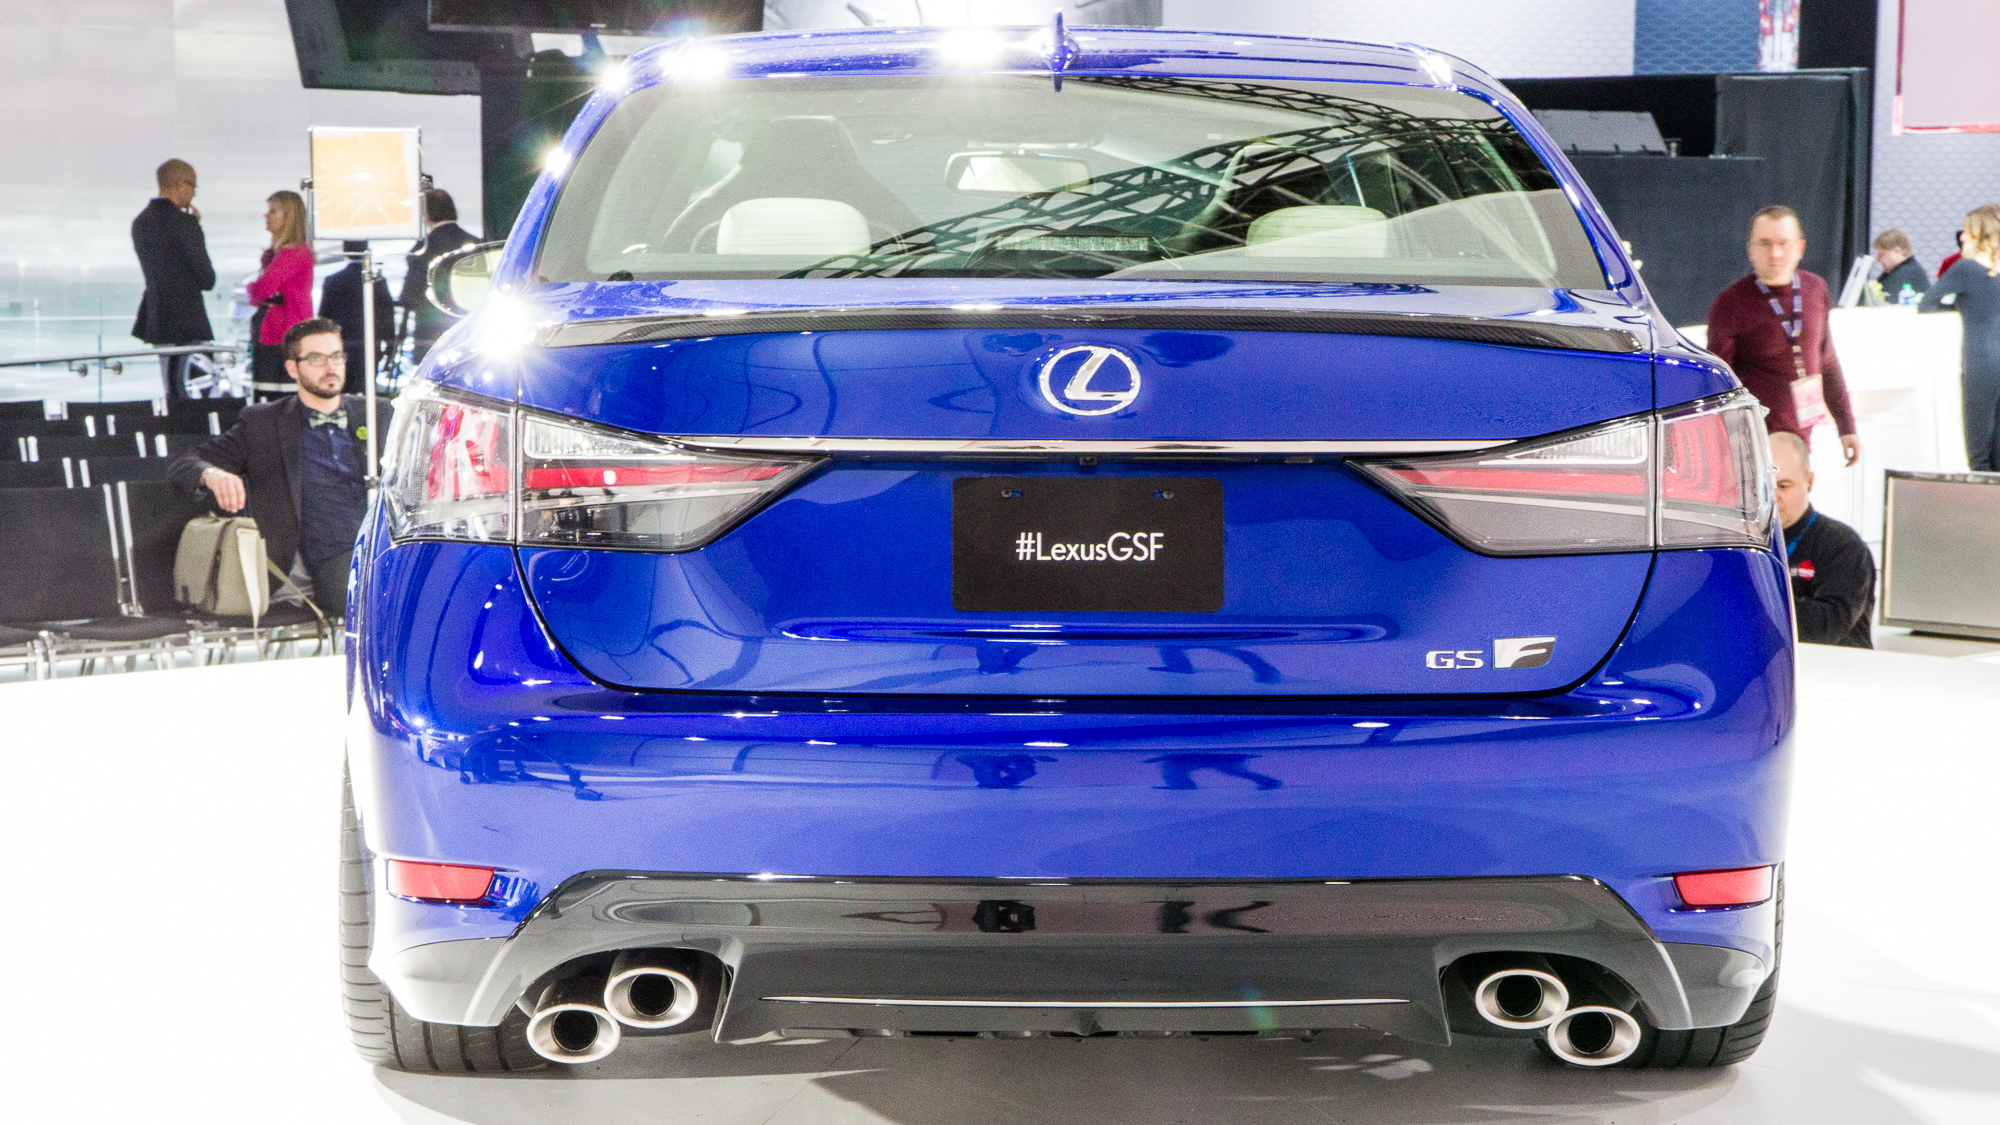 2016 Lexus GS F live photos, 2015 Detroit Auto Show